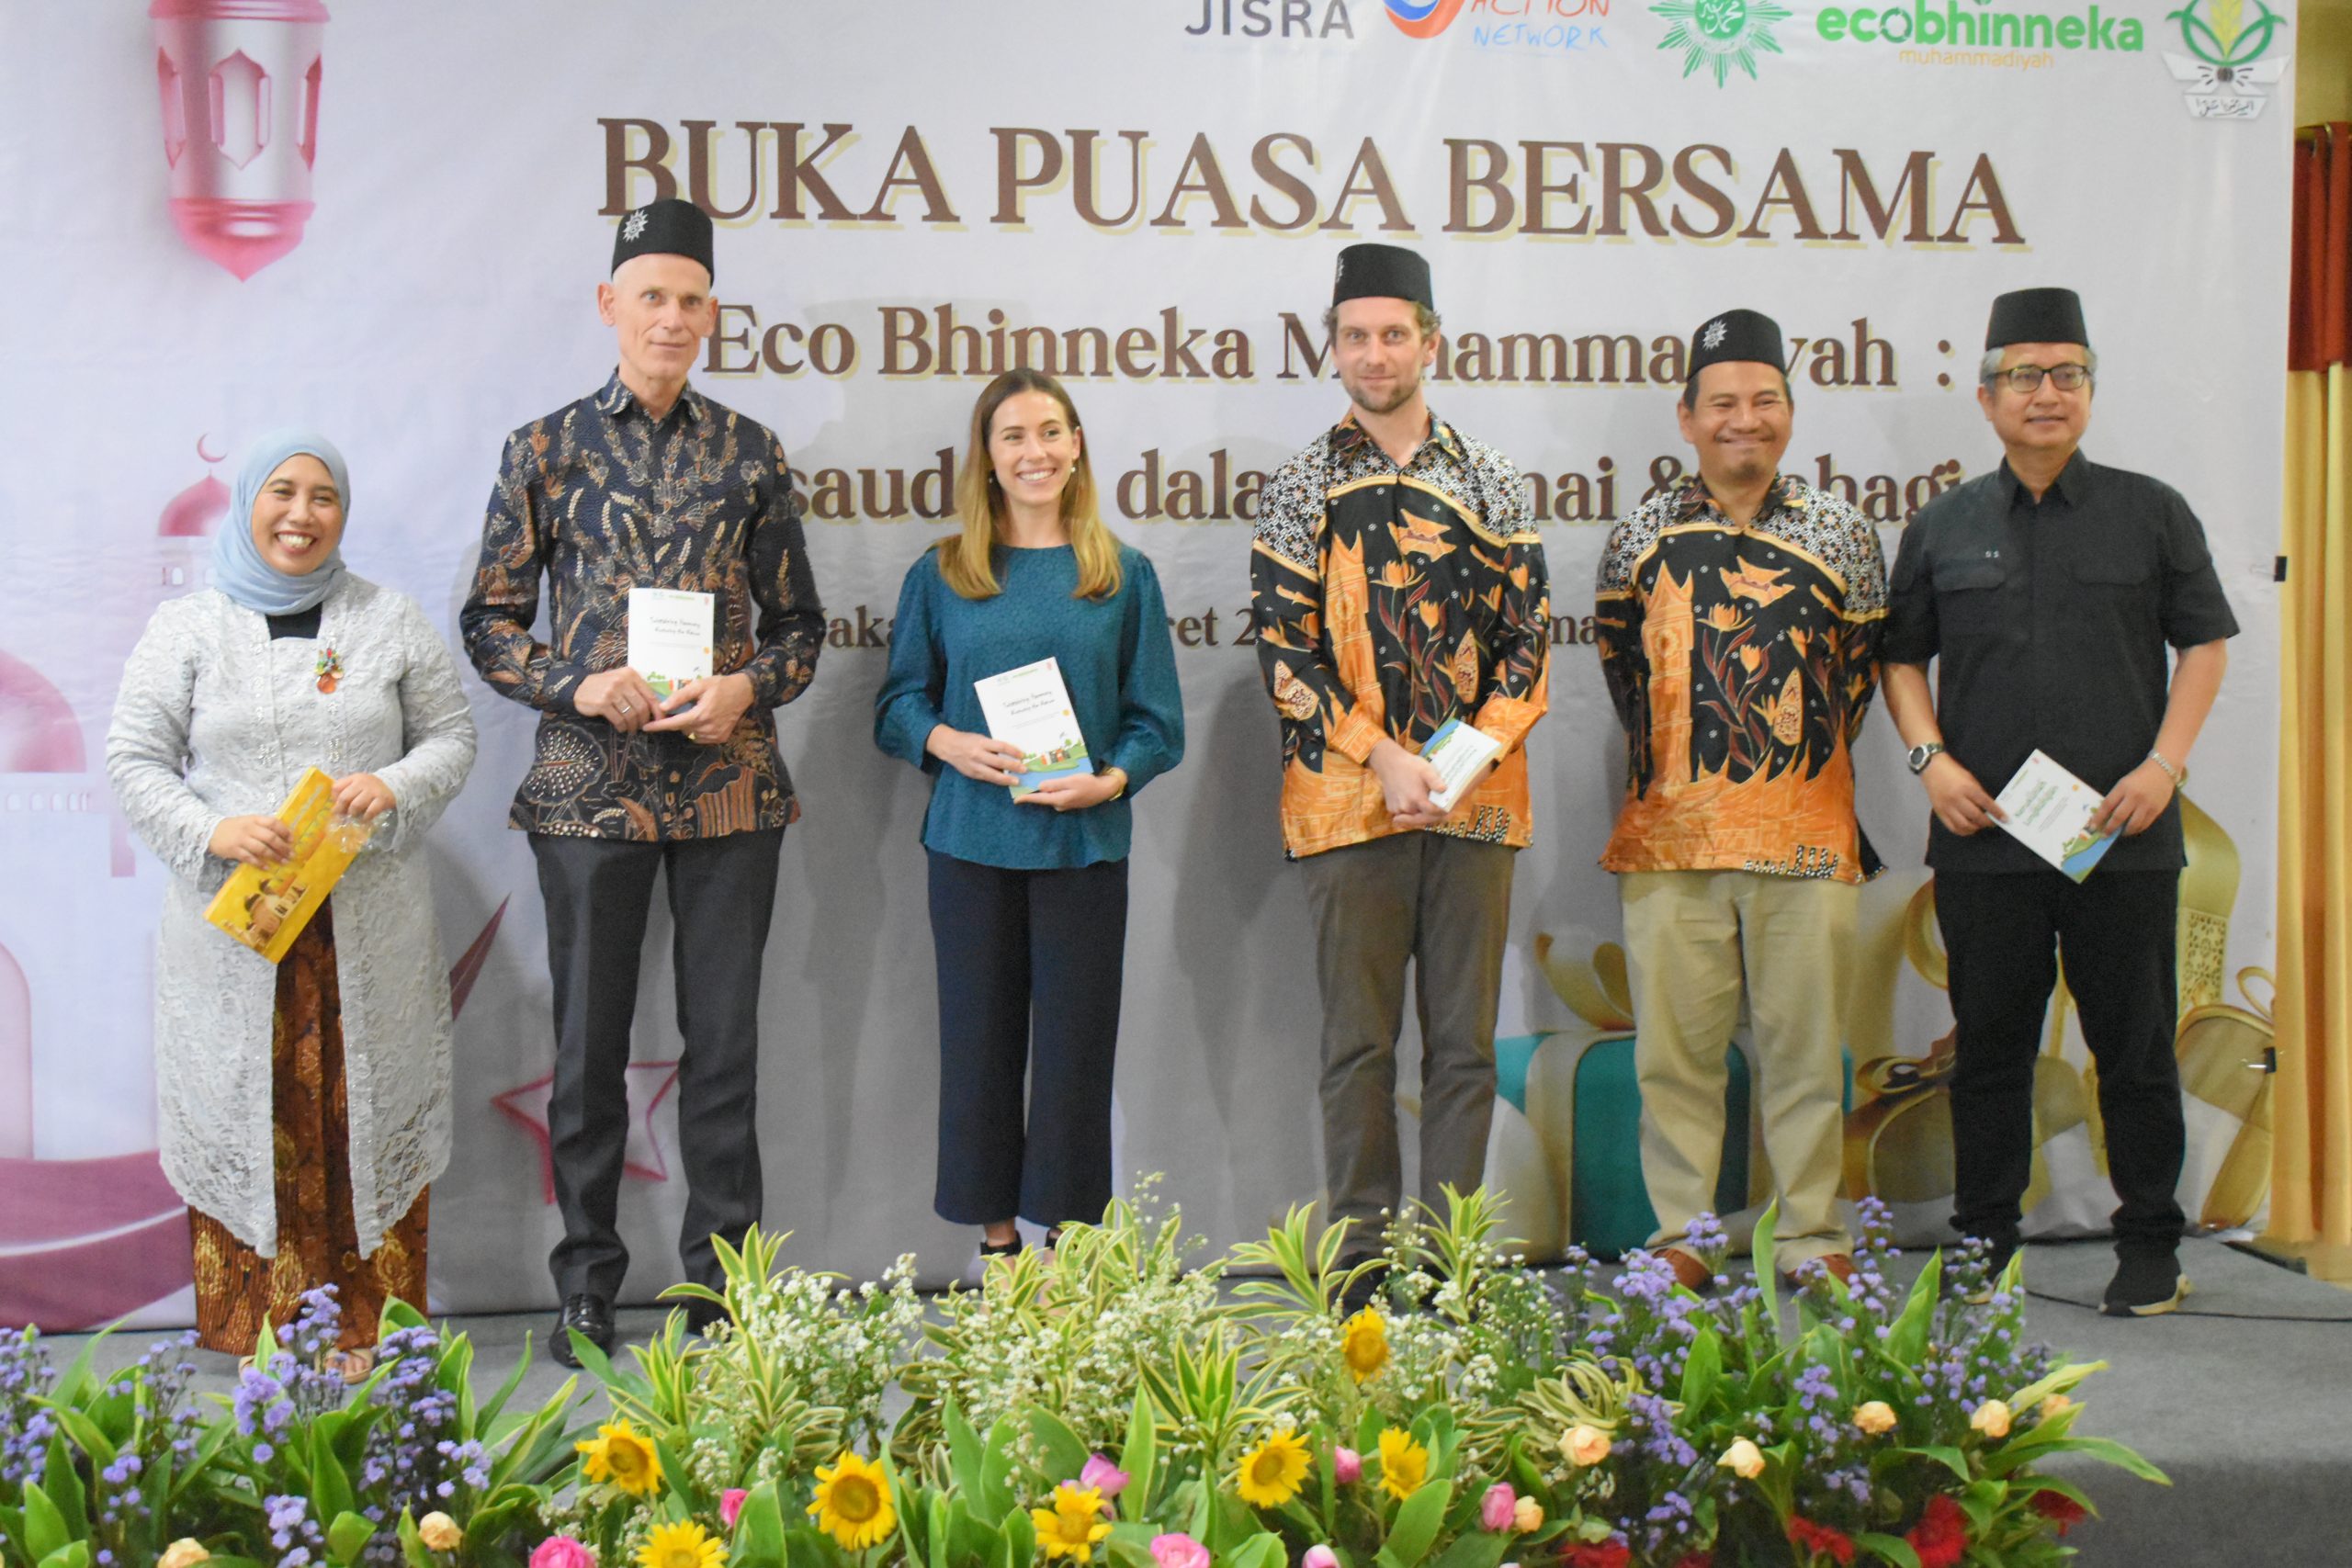 Buka Bersama Eco Bhinneka Muhammadiyah: Bersama dalam Damai dan Bahagia